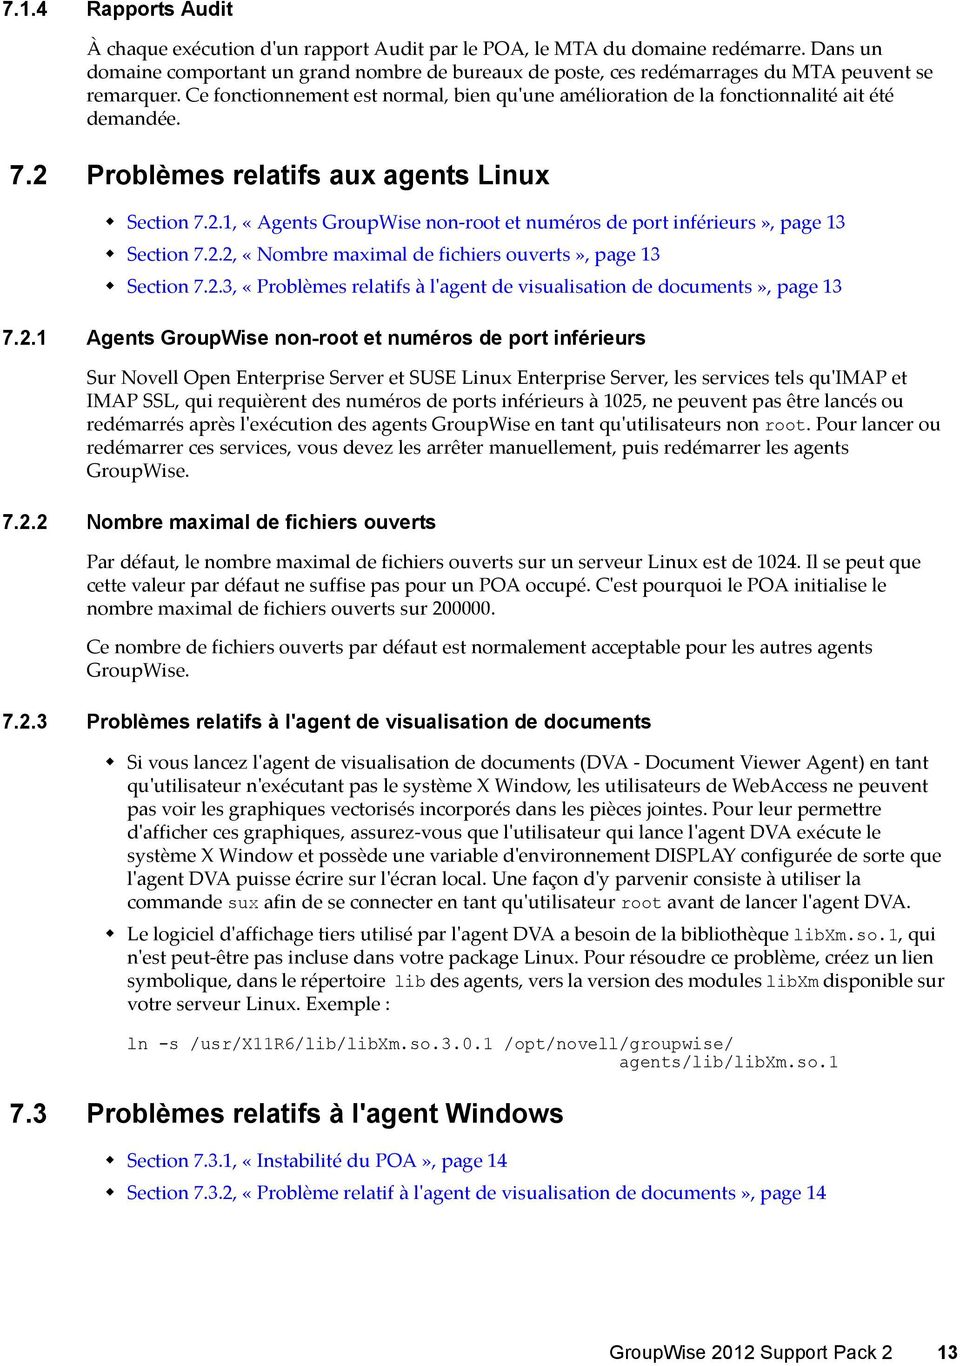 Ce fonctionnement est normal, bien quʹune amélioration de la fonctionnalité ait été demandée. 7.2 Problèmes relatifs aux agents Linux Section 7.2.1, «Agents GroupWise non root et numéros de port inférieurs», page 13 Section 7.